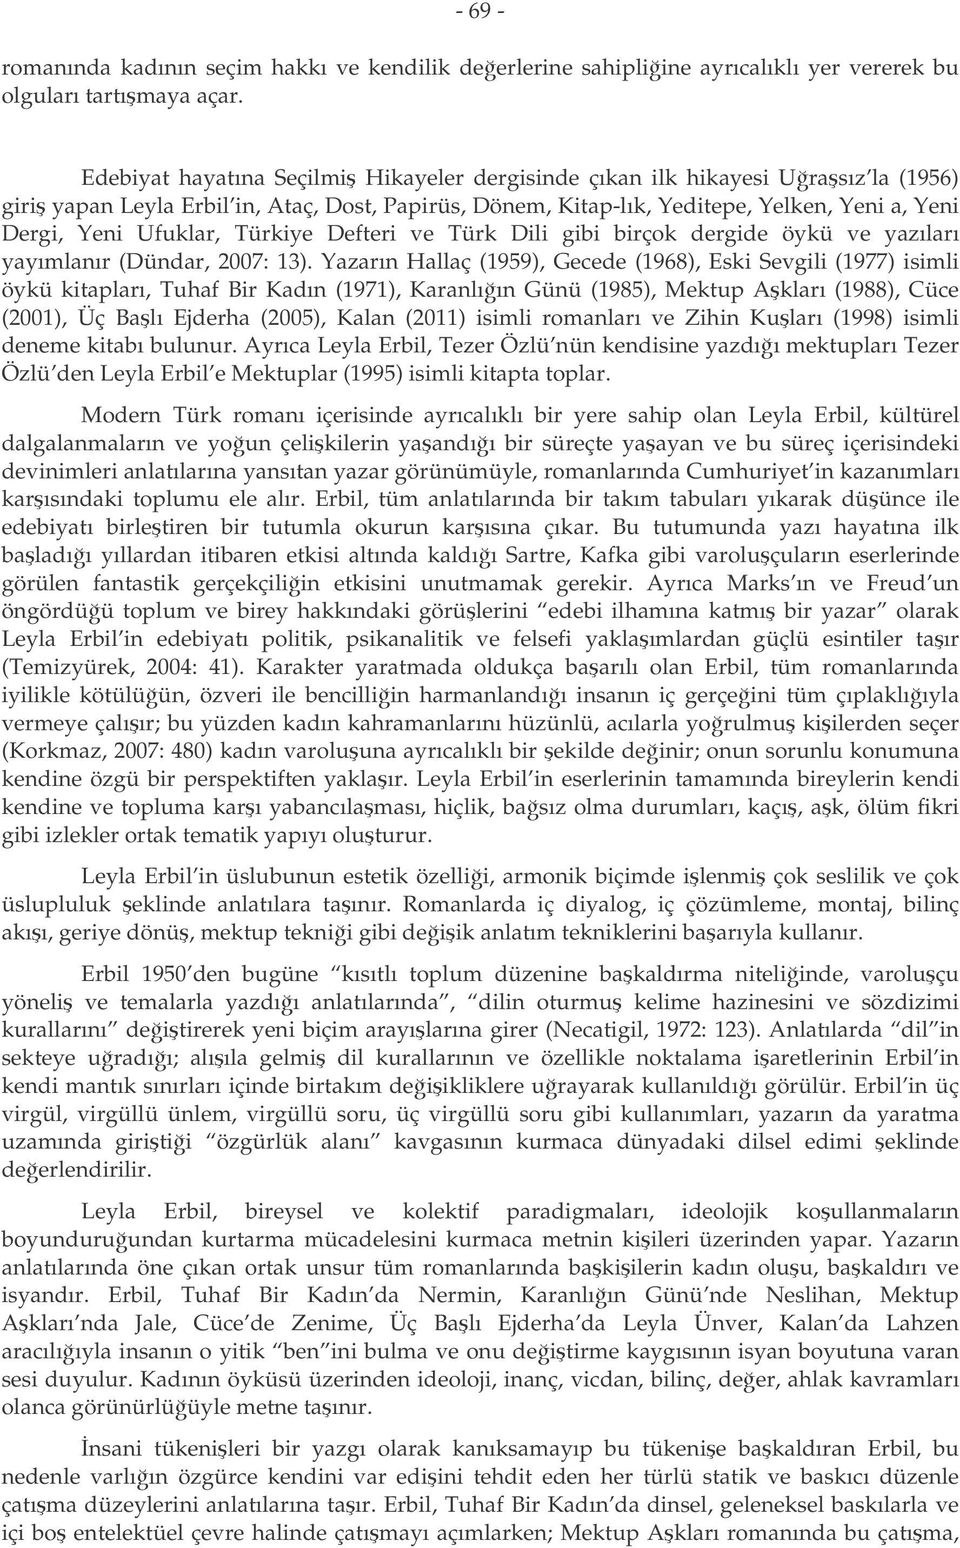 Ufuklar, Türkiye Defteri ve Türk Dili gibi birçok dergide öykü ve yazıları yayımlanır (Dündar, 2007: 13).